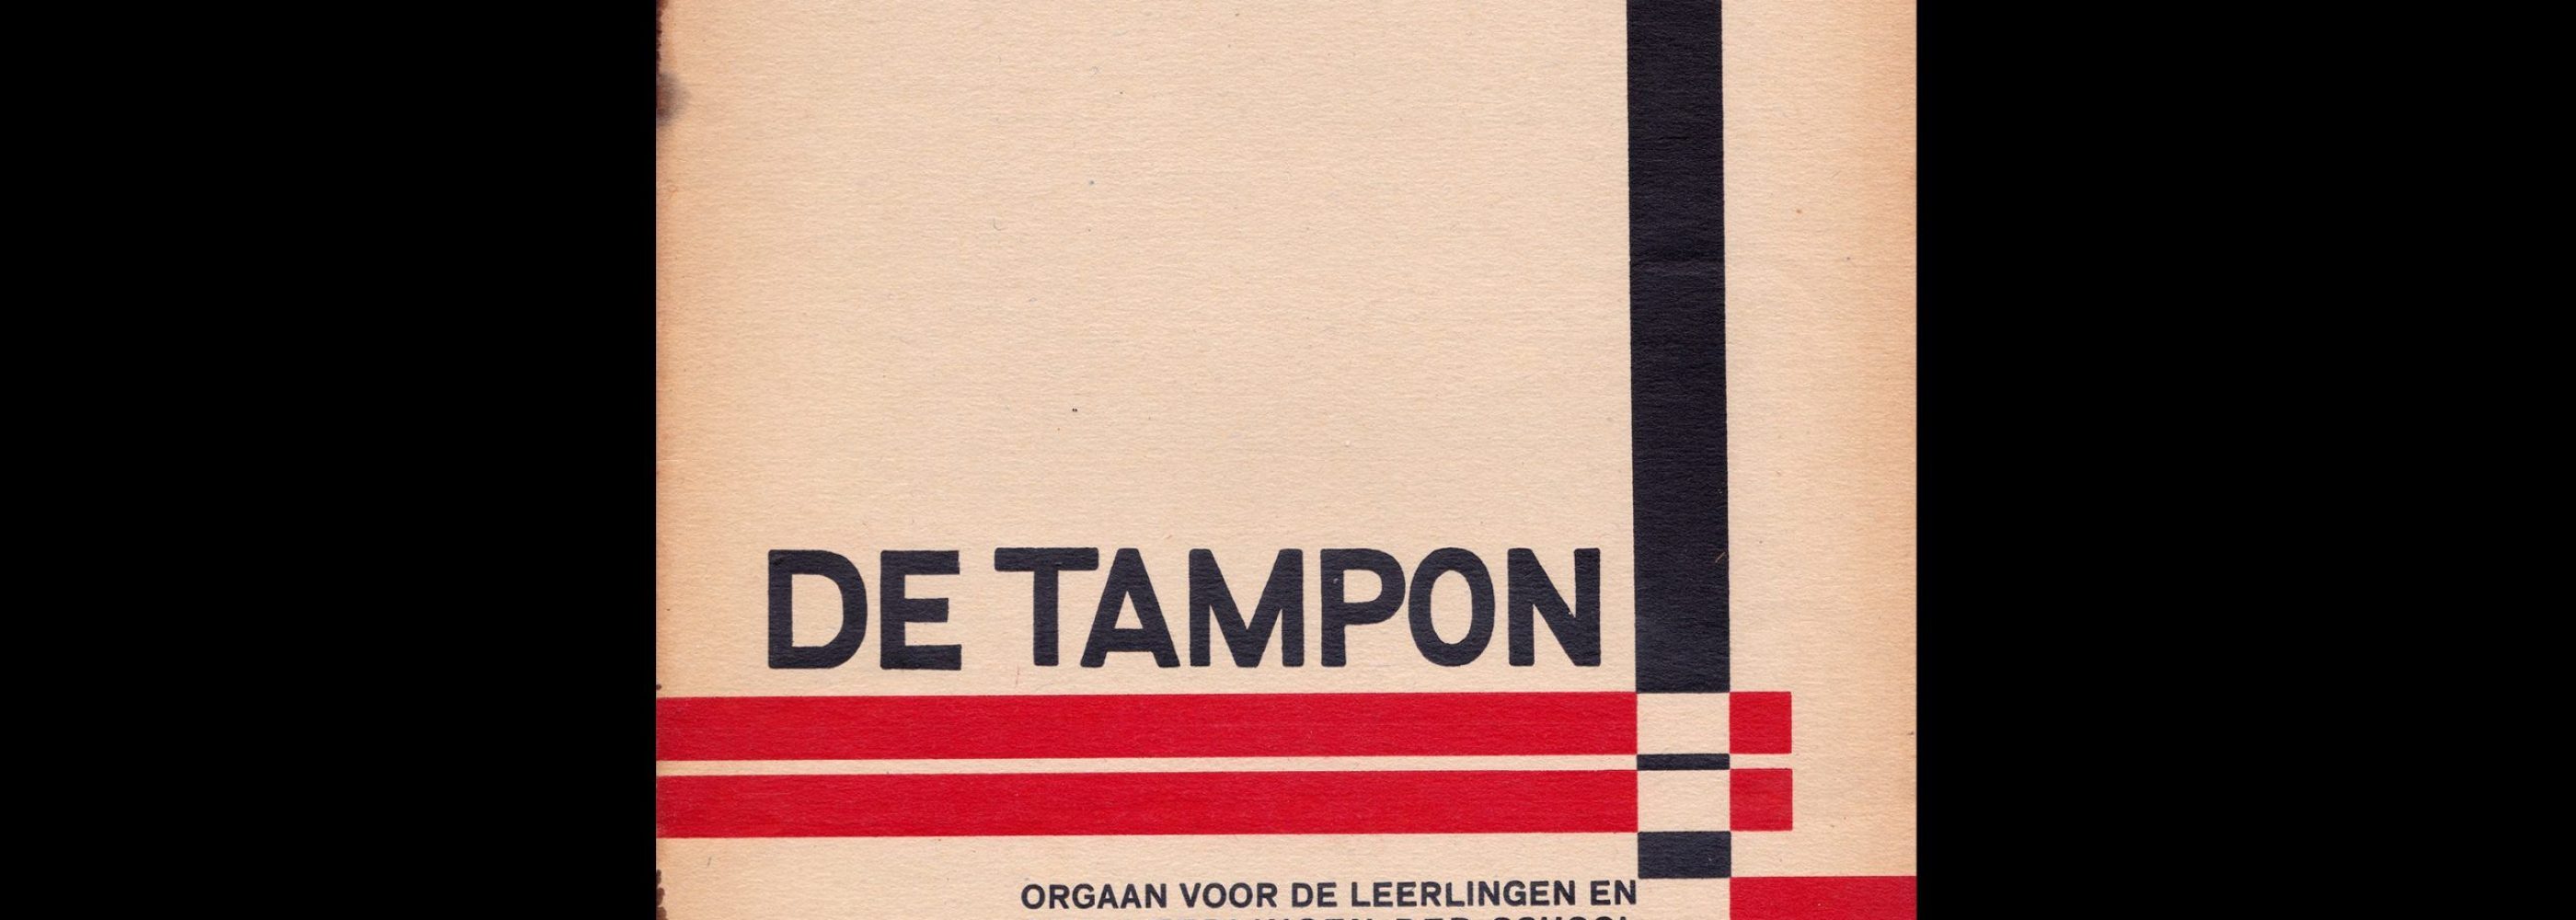 De Tampon, Sept 1931, School voor de Grafische Vakken, Utrecht